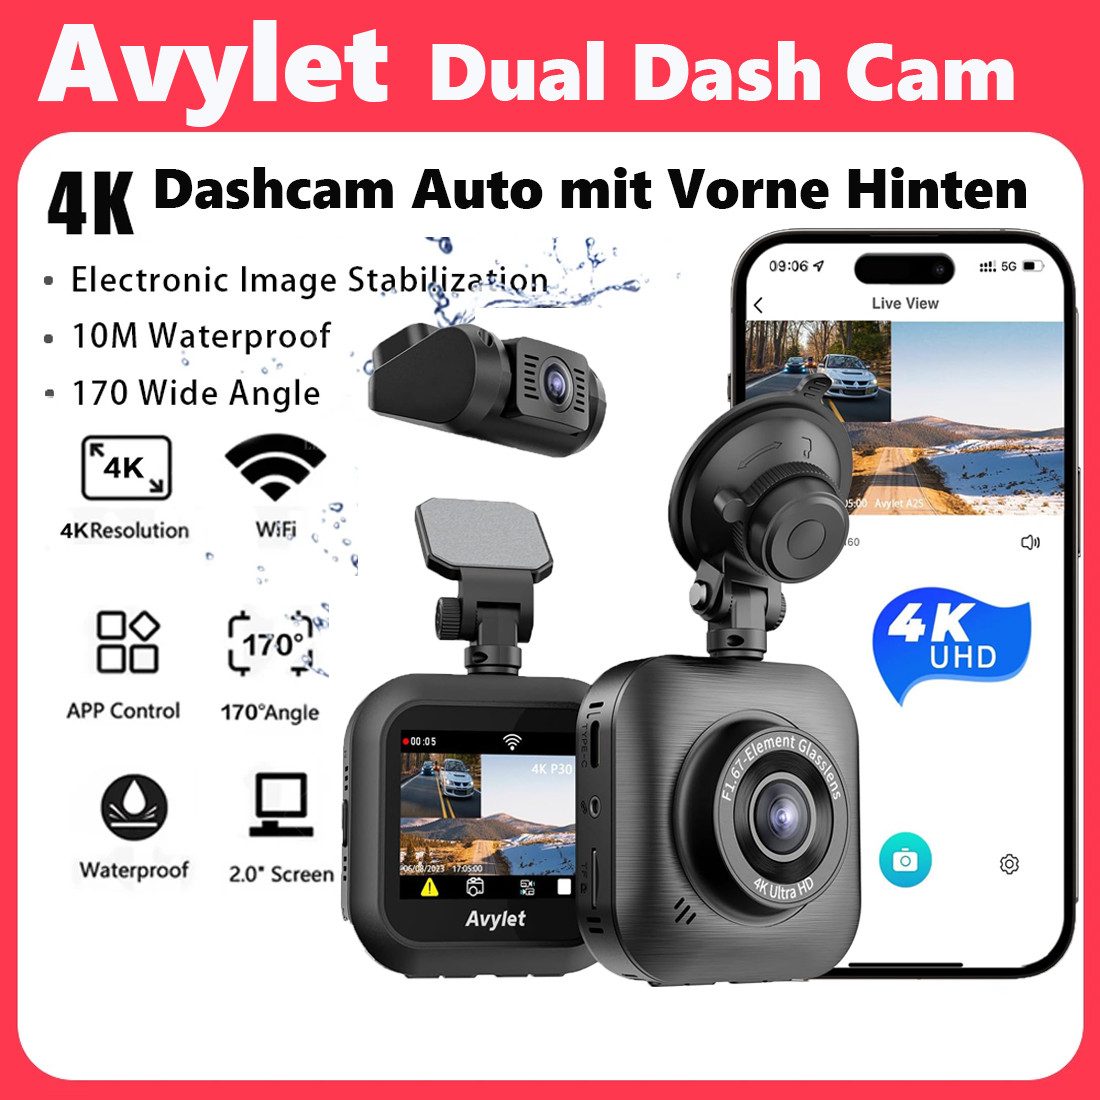 Avylet Dashcam Auto mit Vorne Hinten 4K/1080P, WiFi Autokamera Dashcam (2160p, 1080p HD, WLAN (Wi-Fi), G-Sensor, 24Std.Parküberwachung/Bewegungserkennung,Superkondensator, Loop-Aufnahme, APP Steuerung,170° Weitwinkel und Super Nachtsicht,WDR)